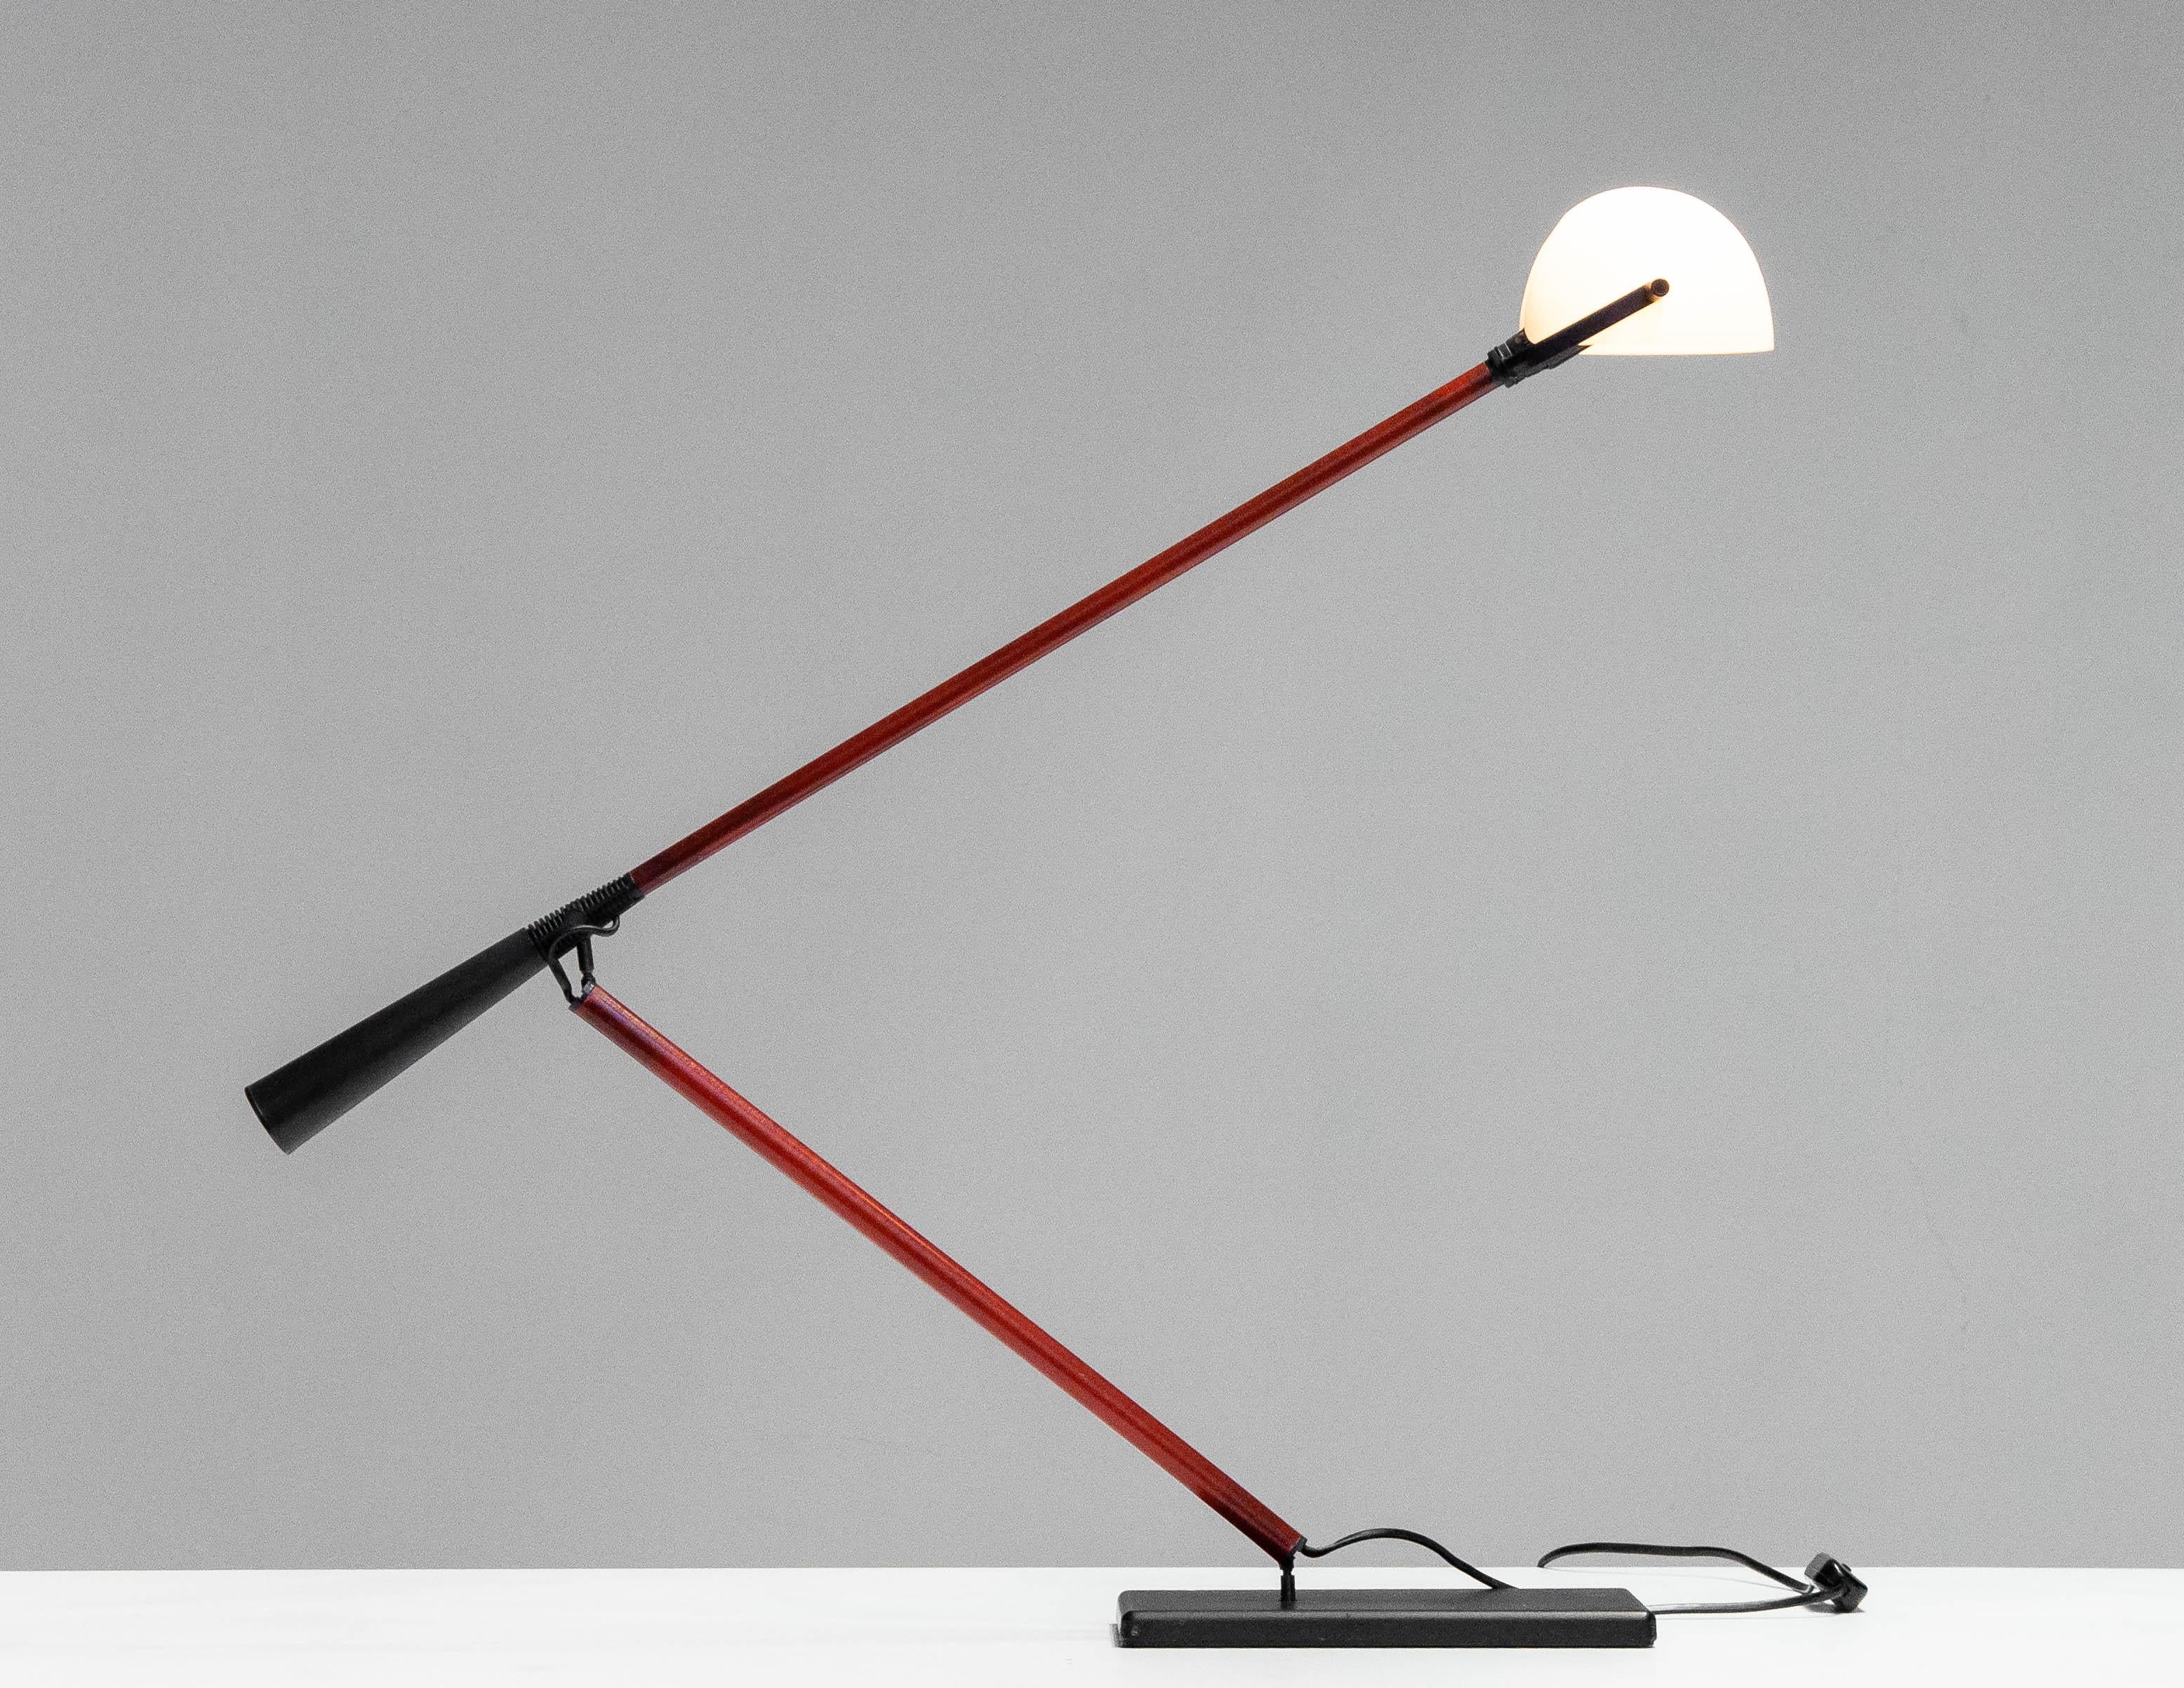 Lampe de bureau / lampe de table italienne Modèle : 613 conçu par Paolo Rizzatto pour Arteluce dans les années 70. La lampe de table a une base rectangulaire en métal avec un bras torsadé en fibre de verre. Bras en fibre de verre avec contrepoids 
A